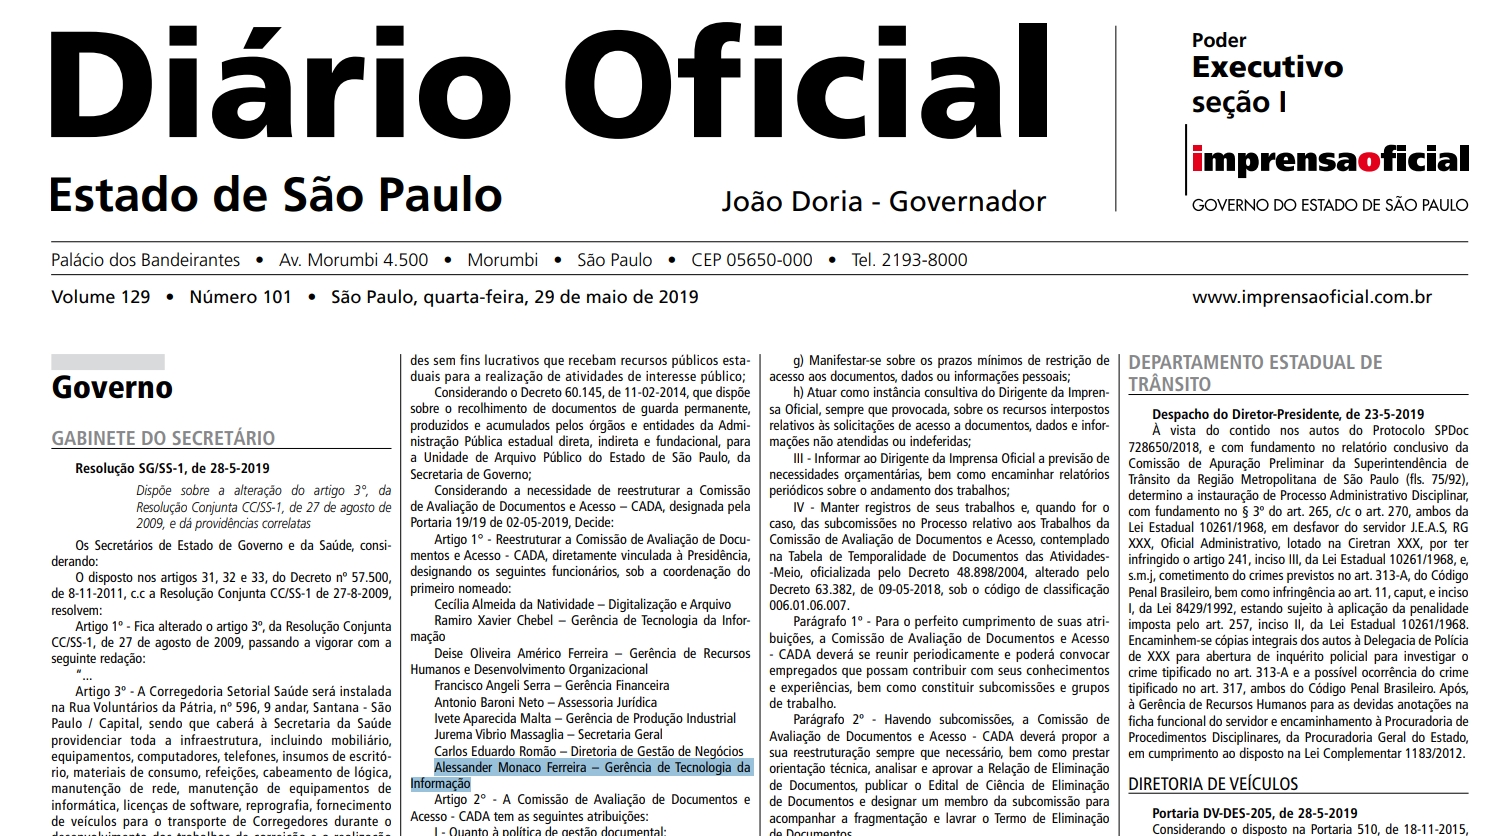 Diário Oficial do Estado de São Pualo mostra cargo de Alessander Monaco